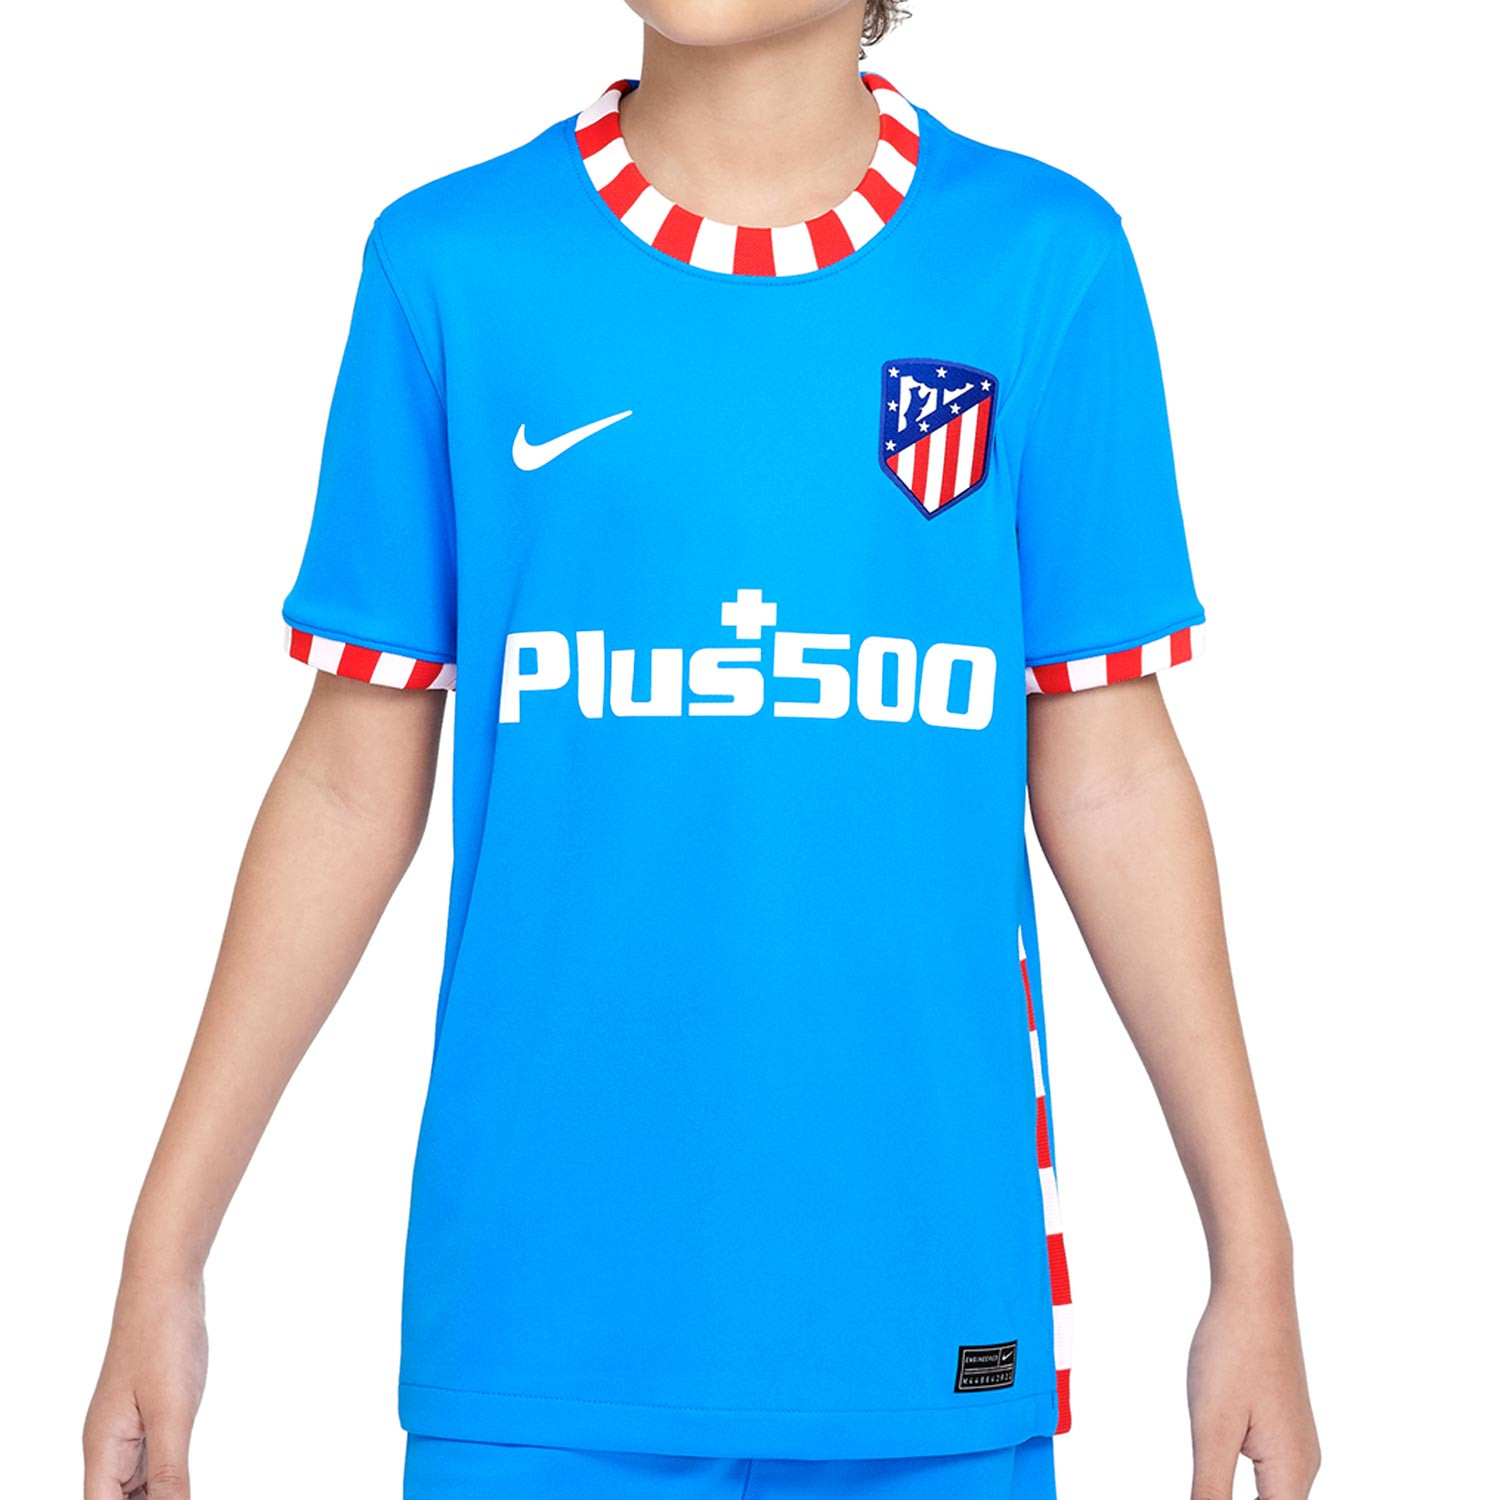 Equipación Nike Atlético niño 3-8 años 2021 2022